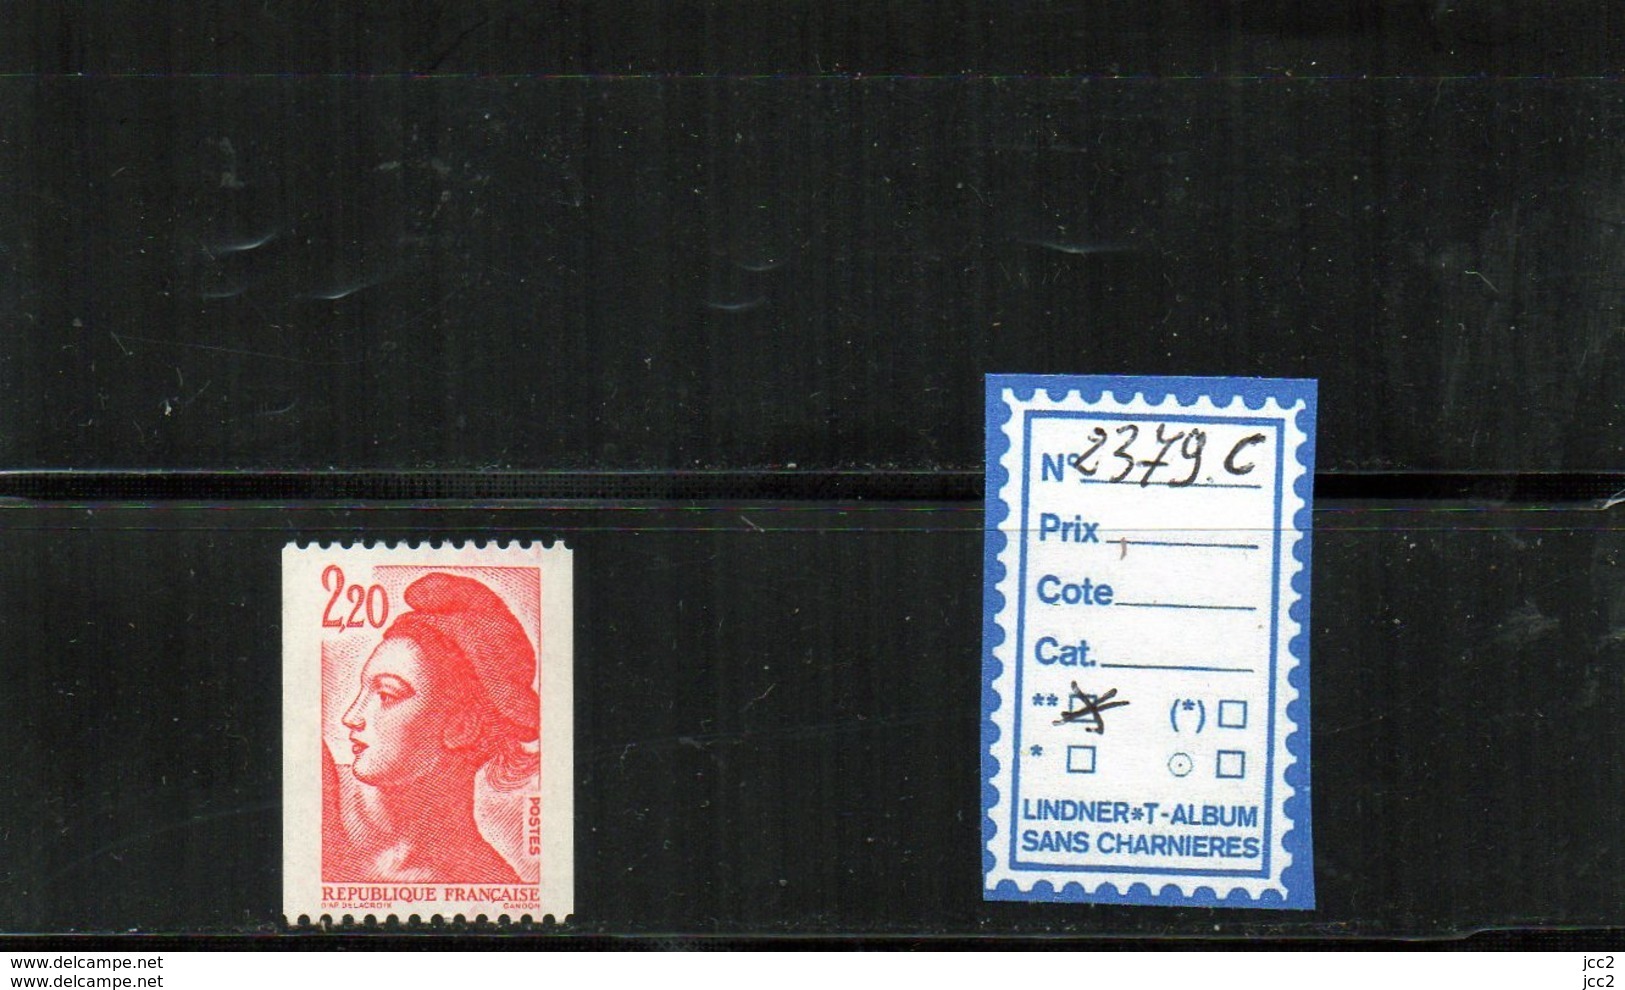 Liberté -  Roulettes **  N°2379c - Coil Stamps